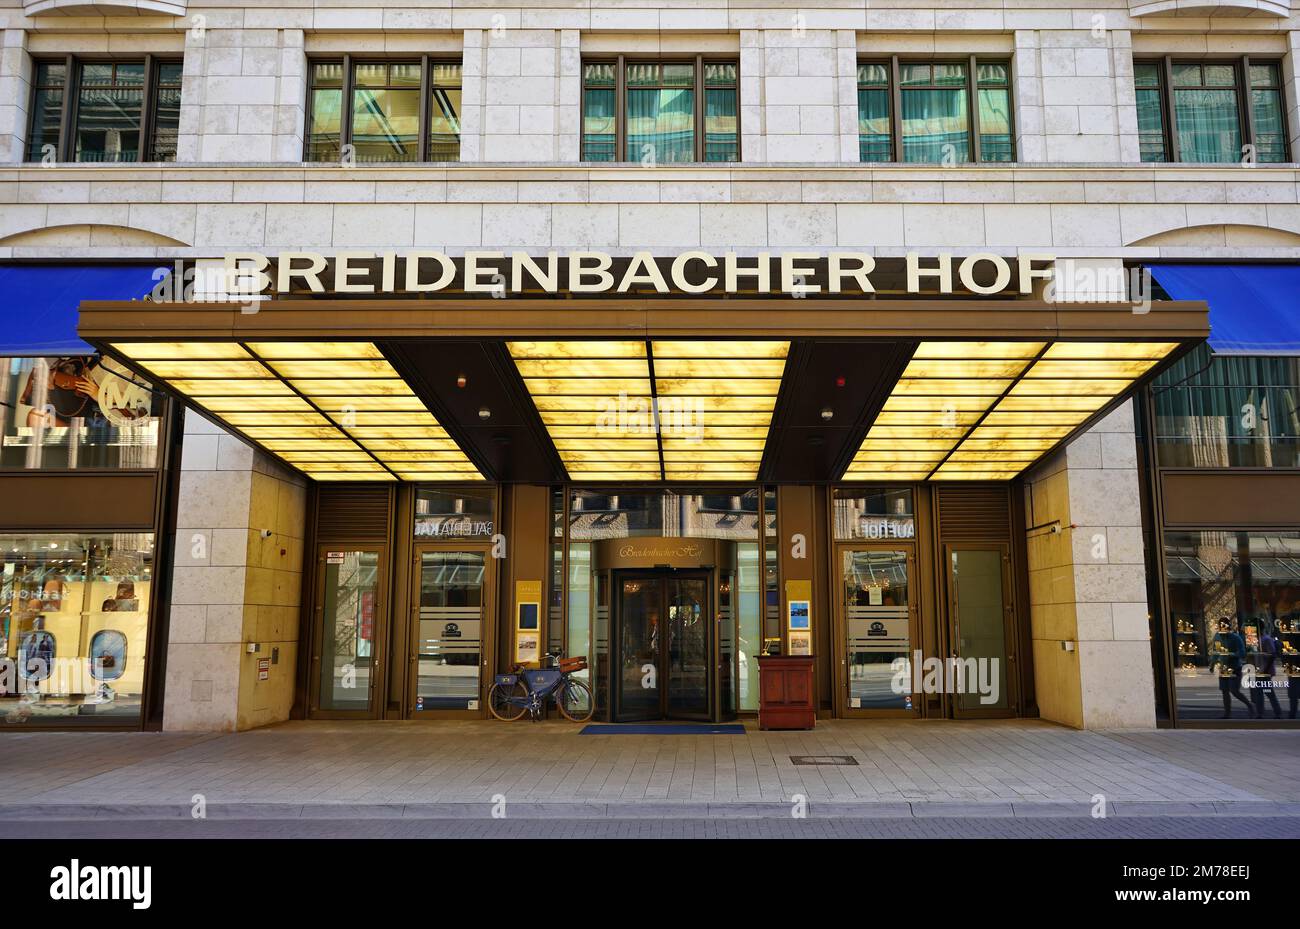 Vue de face de l'hôtel de luxe „Breidenbacher Hof“ à Königsallee à Düsseldorf/Allemagne. L'hôtel a une tradition de plus de 200 ans. Banque D'Images